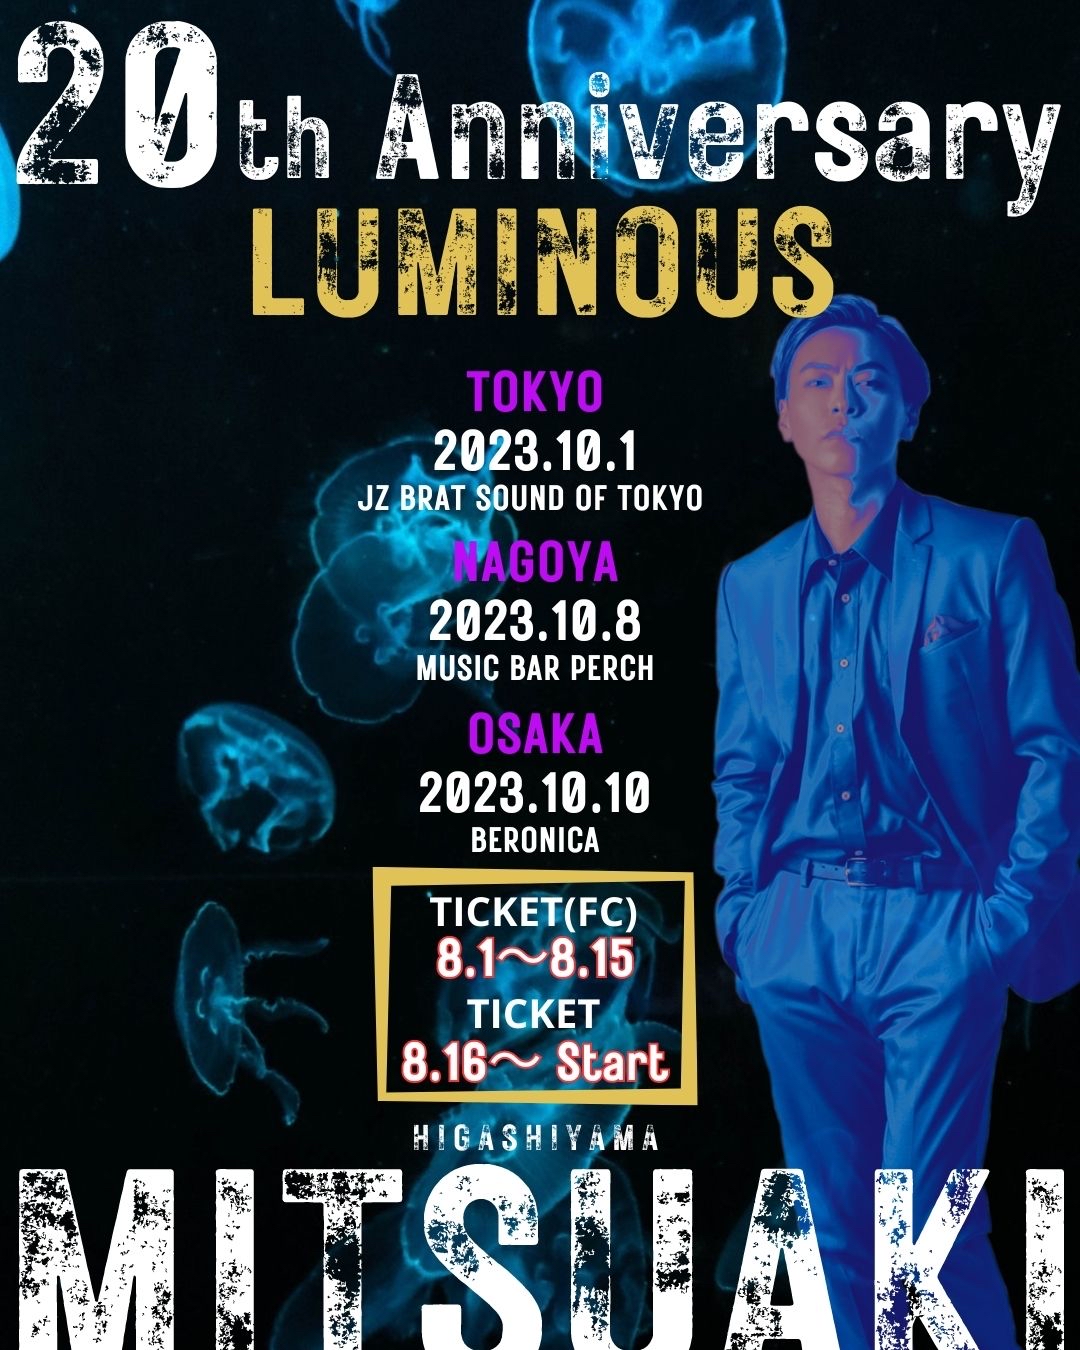 【夜公演】東山光明《MITSUAKI》 芸能活動20周年 LIVEツアー『LUMINOUS』